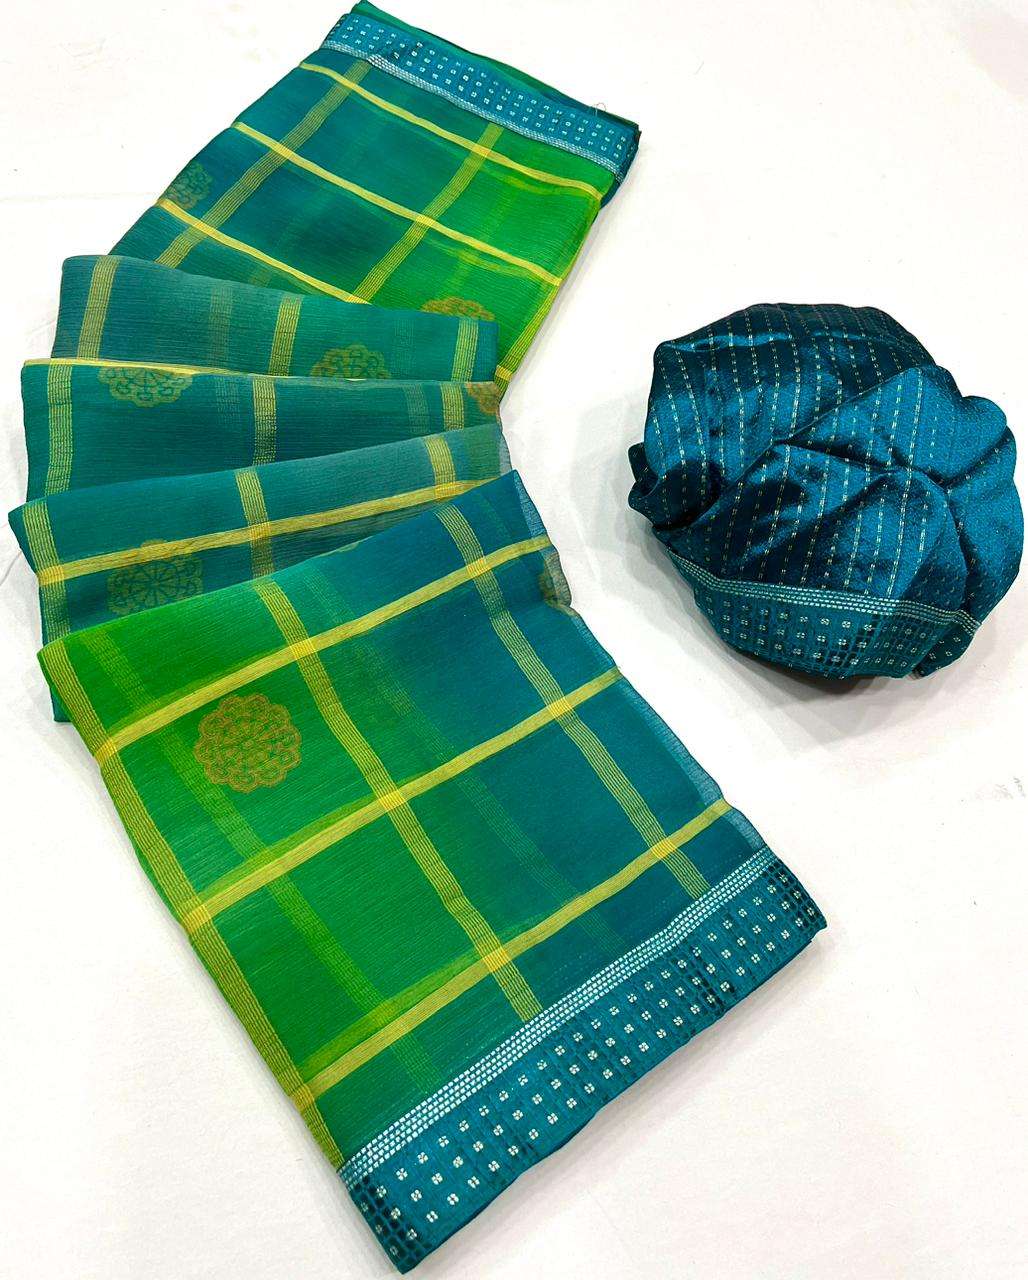 Lt fabrics kashvi creation PANCHHI  Viscose chiffon with fan...